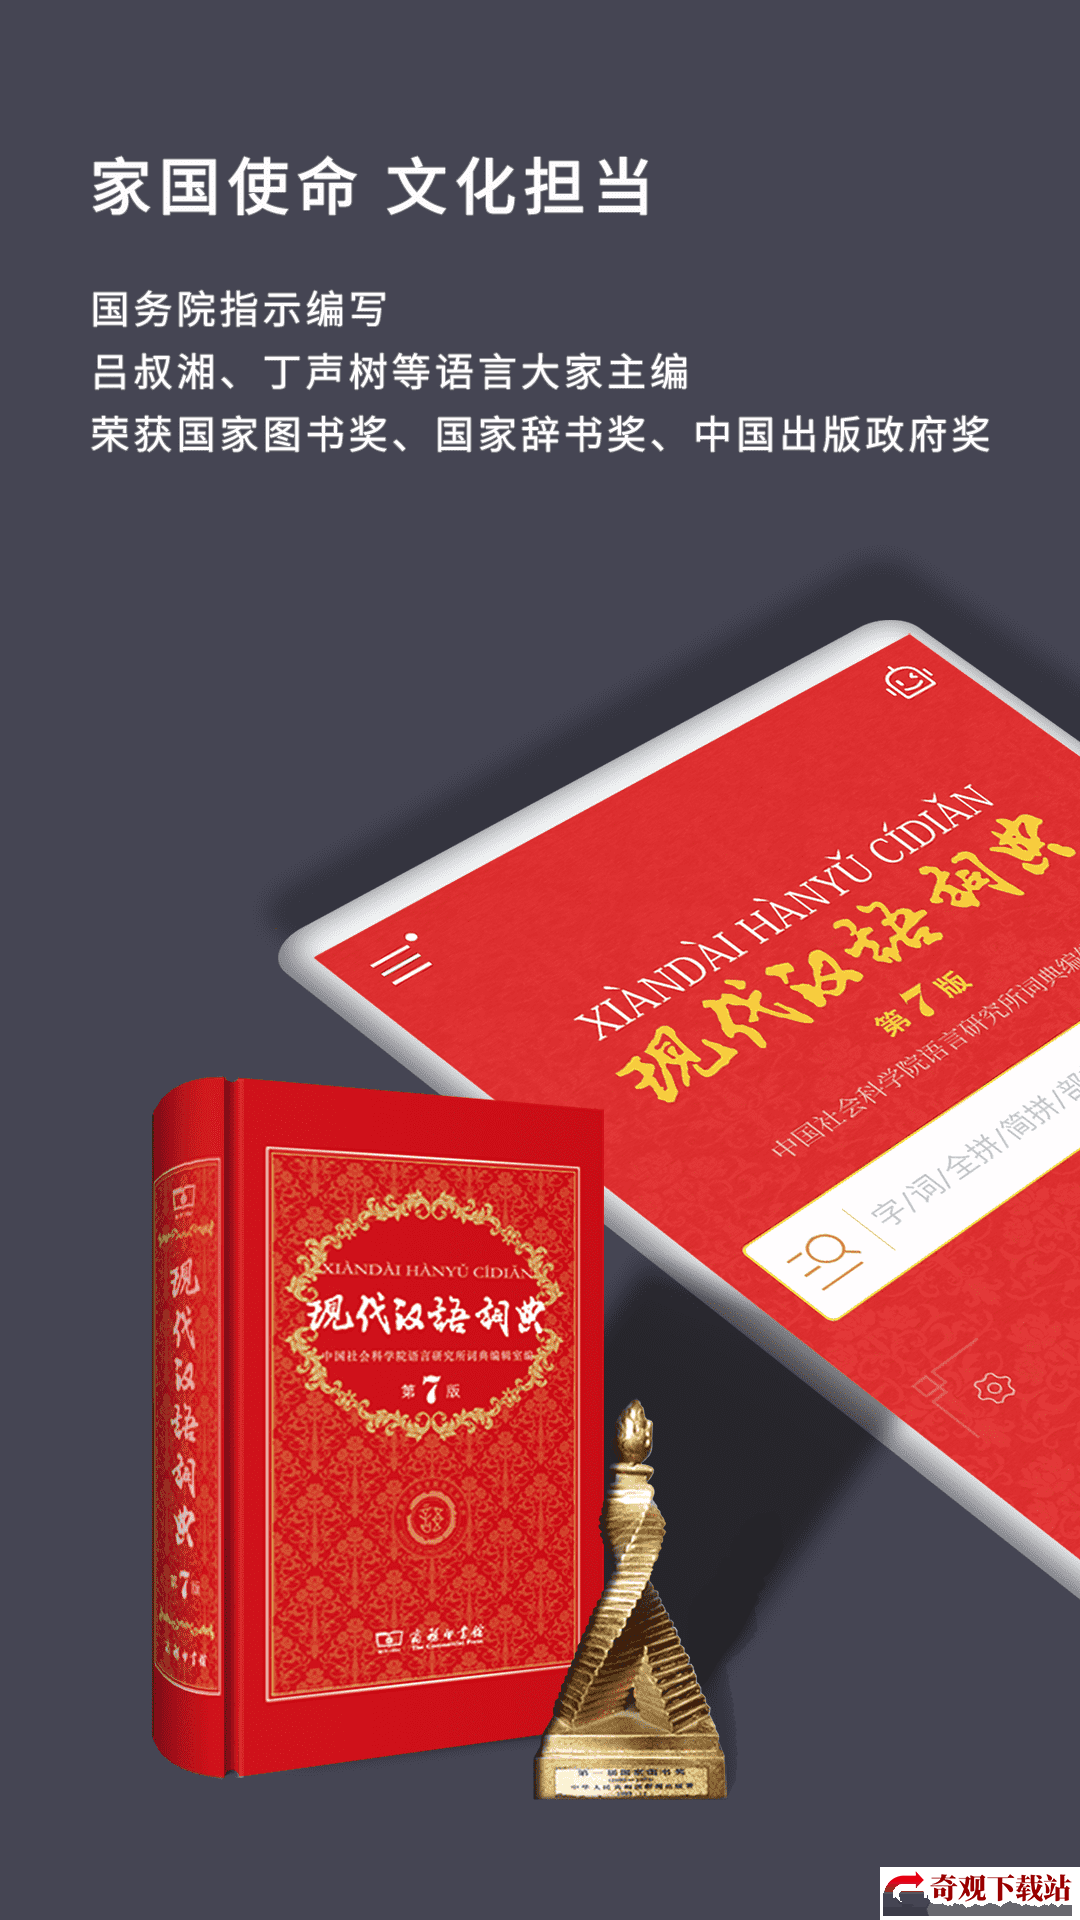 现代汉语词典第七版,现代汉语词典第七版